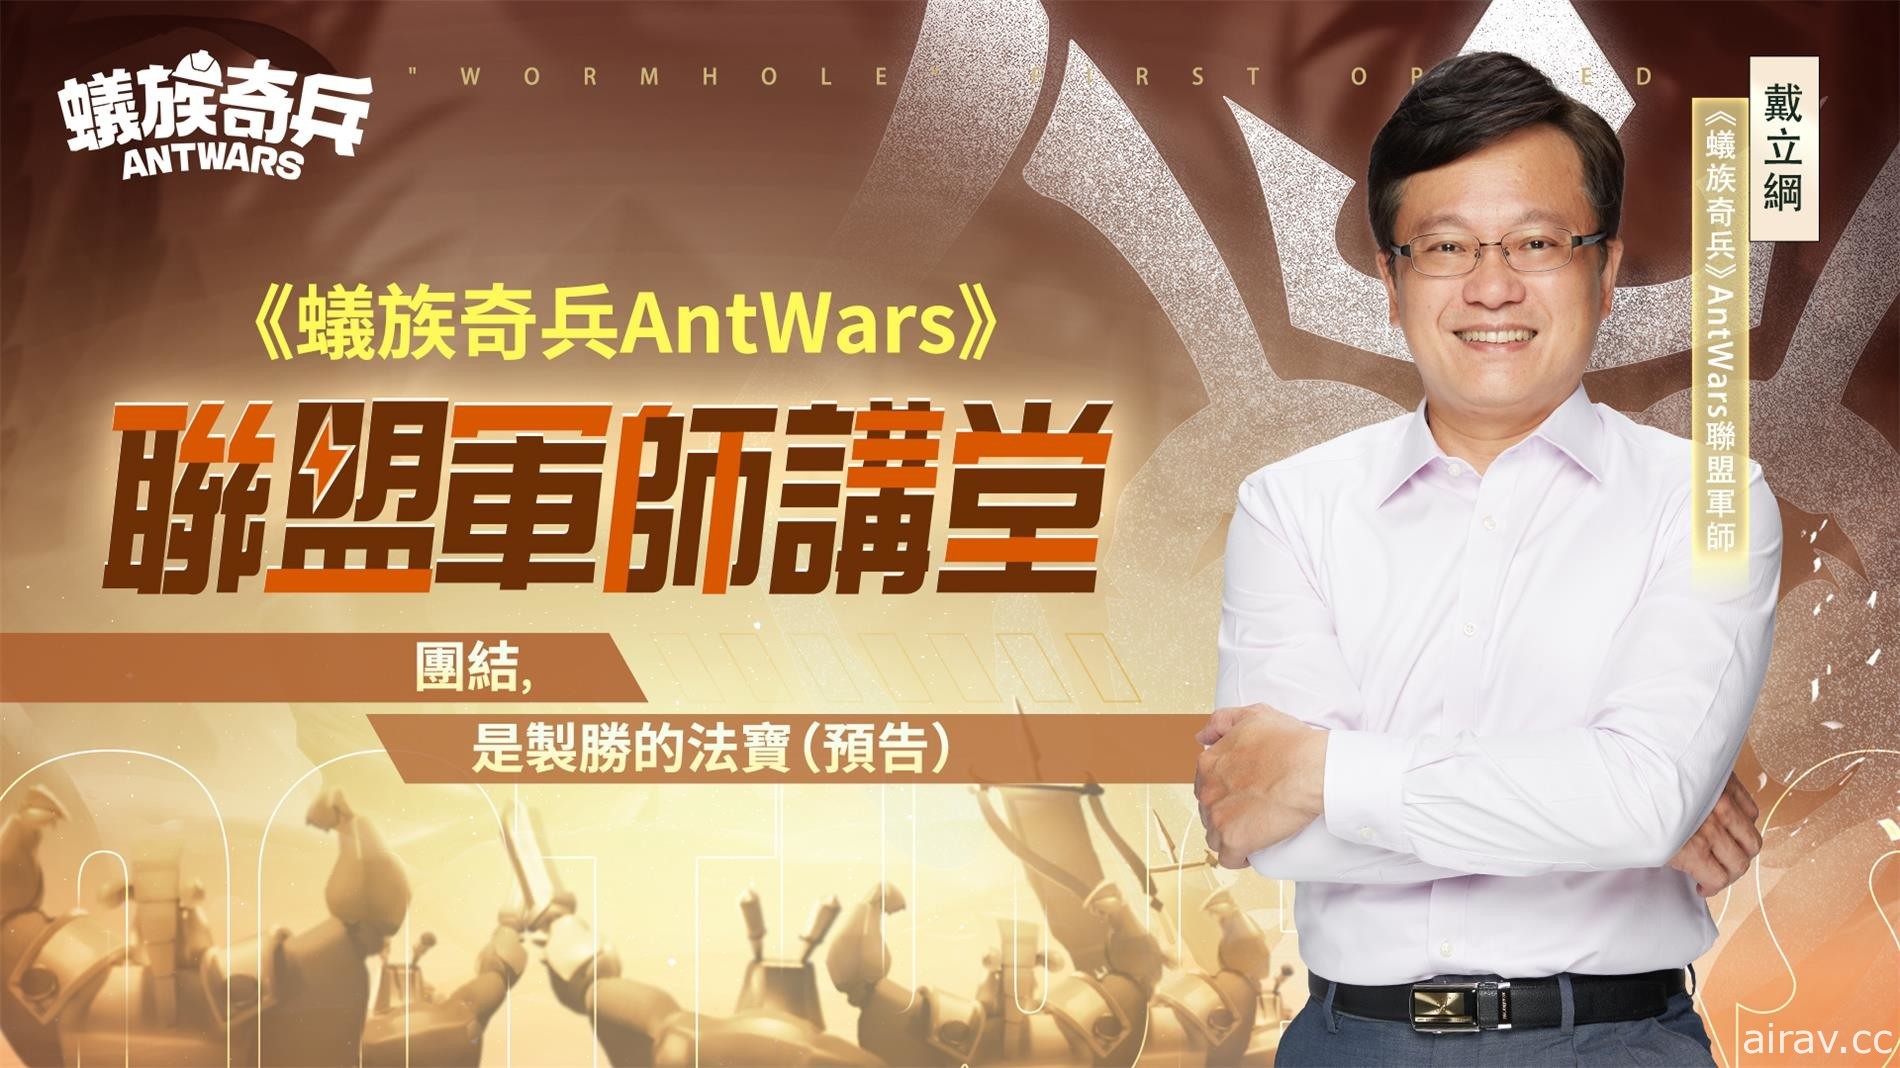 《蟻族奇兵 AntWars》宣佈 4/26 正式上線 公開「百萬大獎最強工蟻爭霸賽」活動